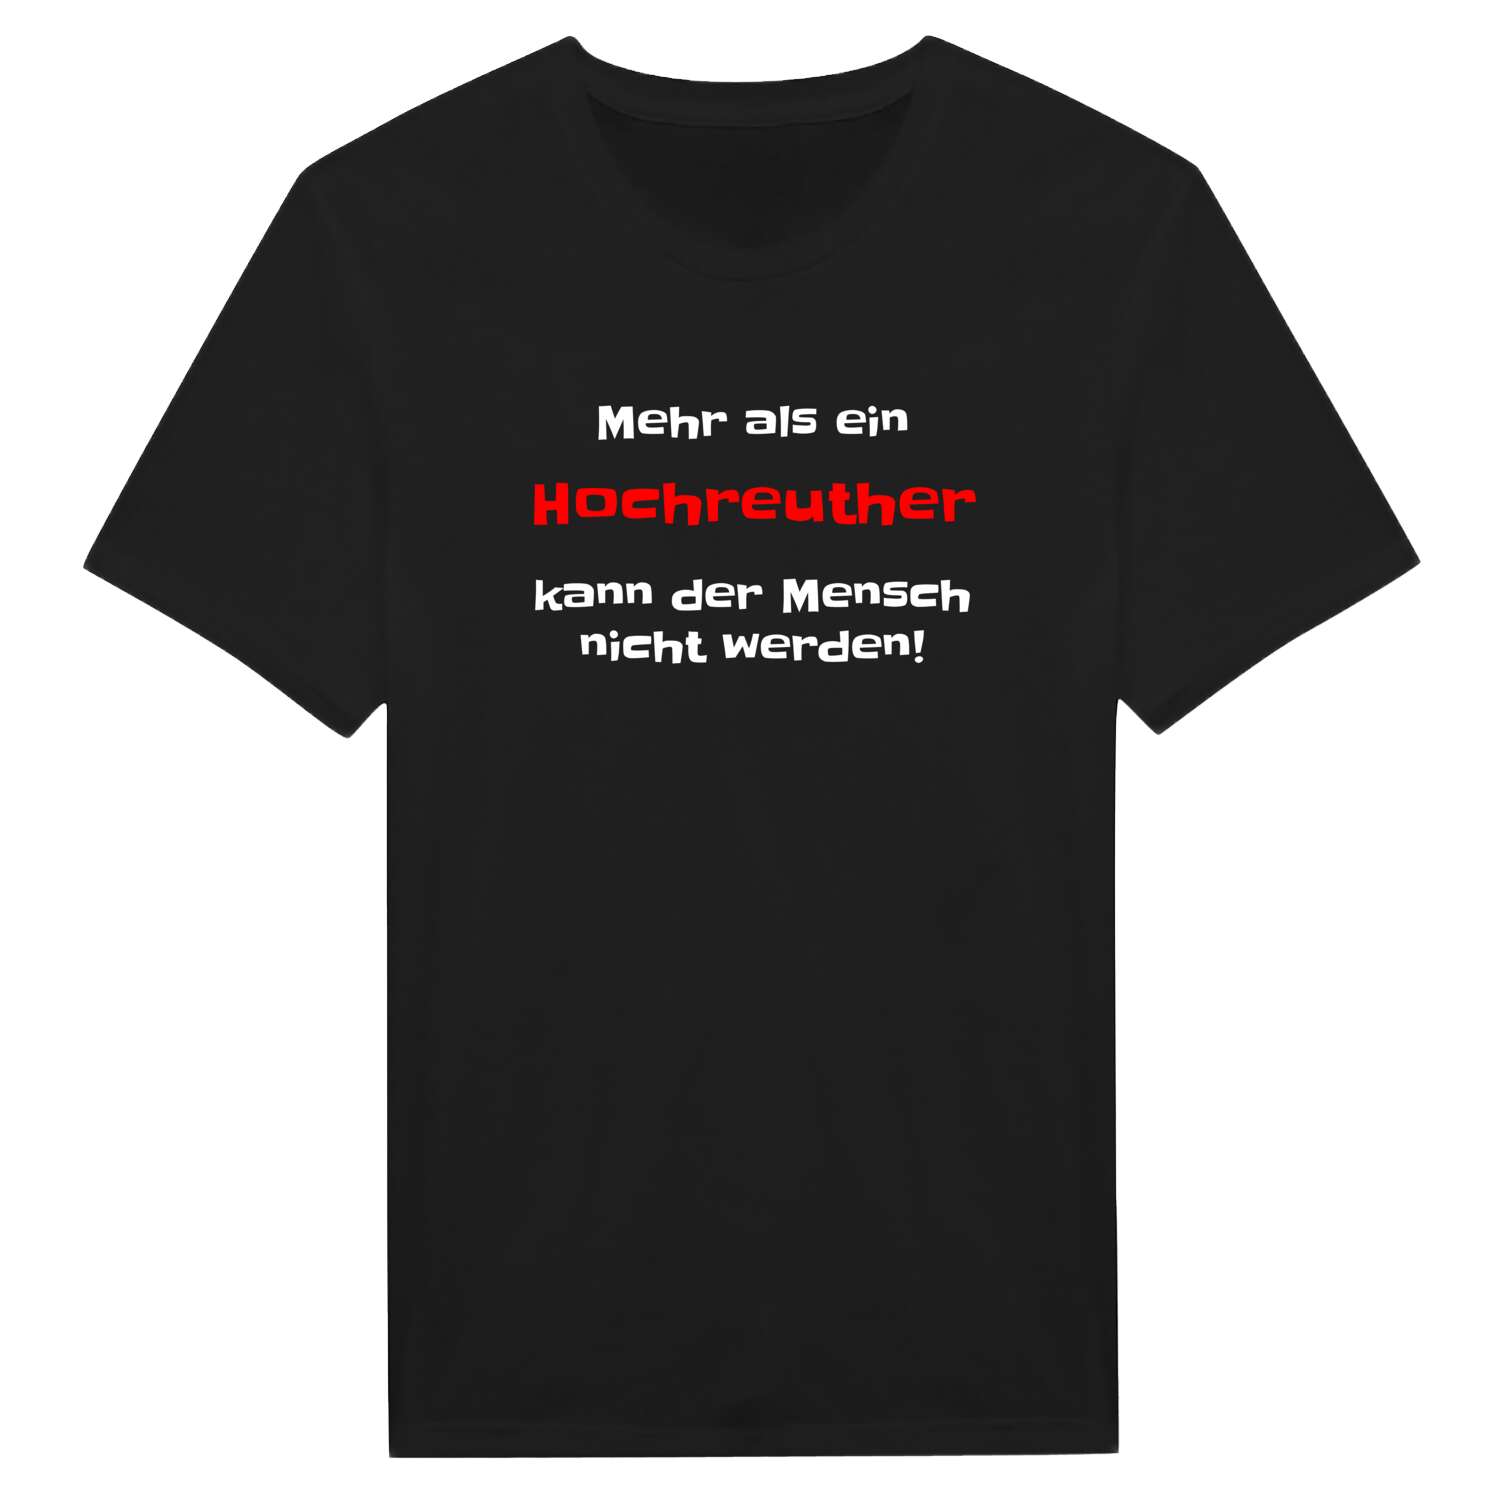 Hochreuth T-Shirt »Mehr als ein«